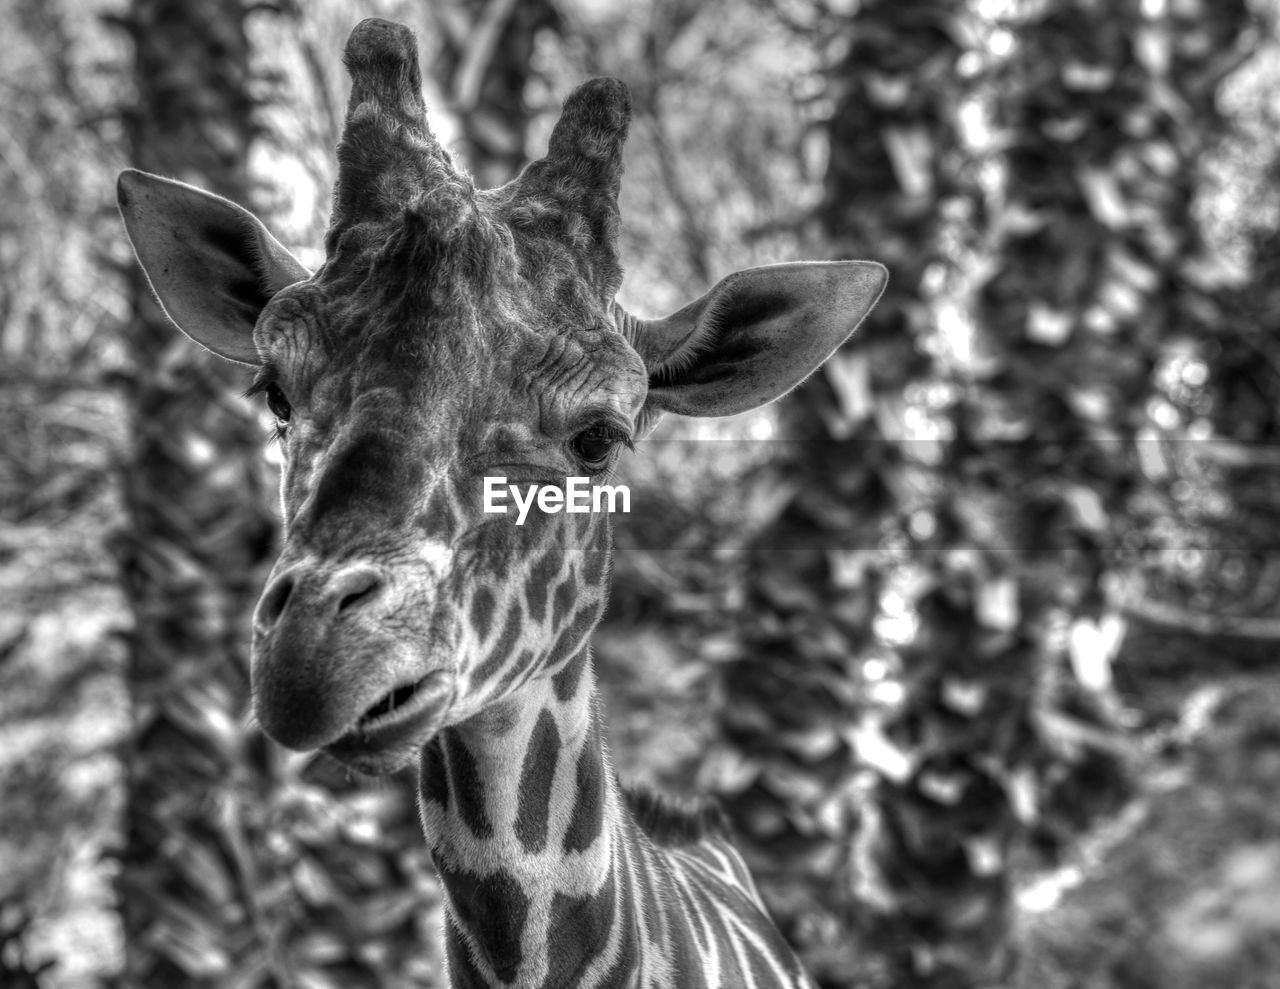 Inquisitive giraffe